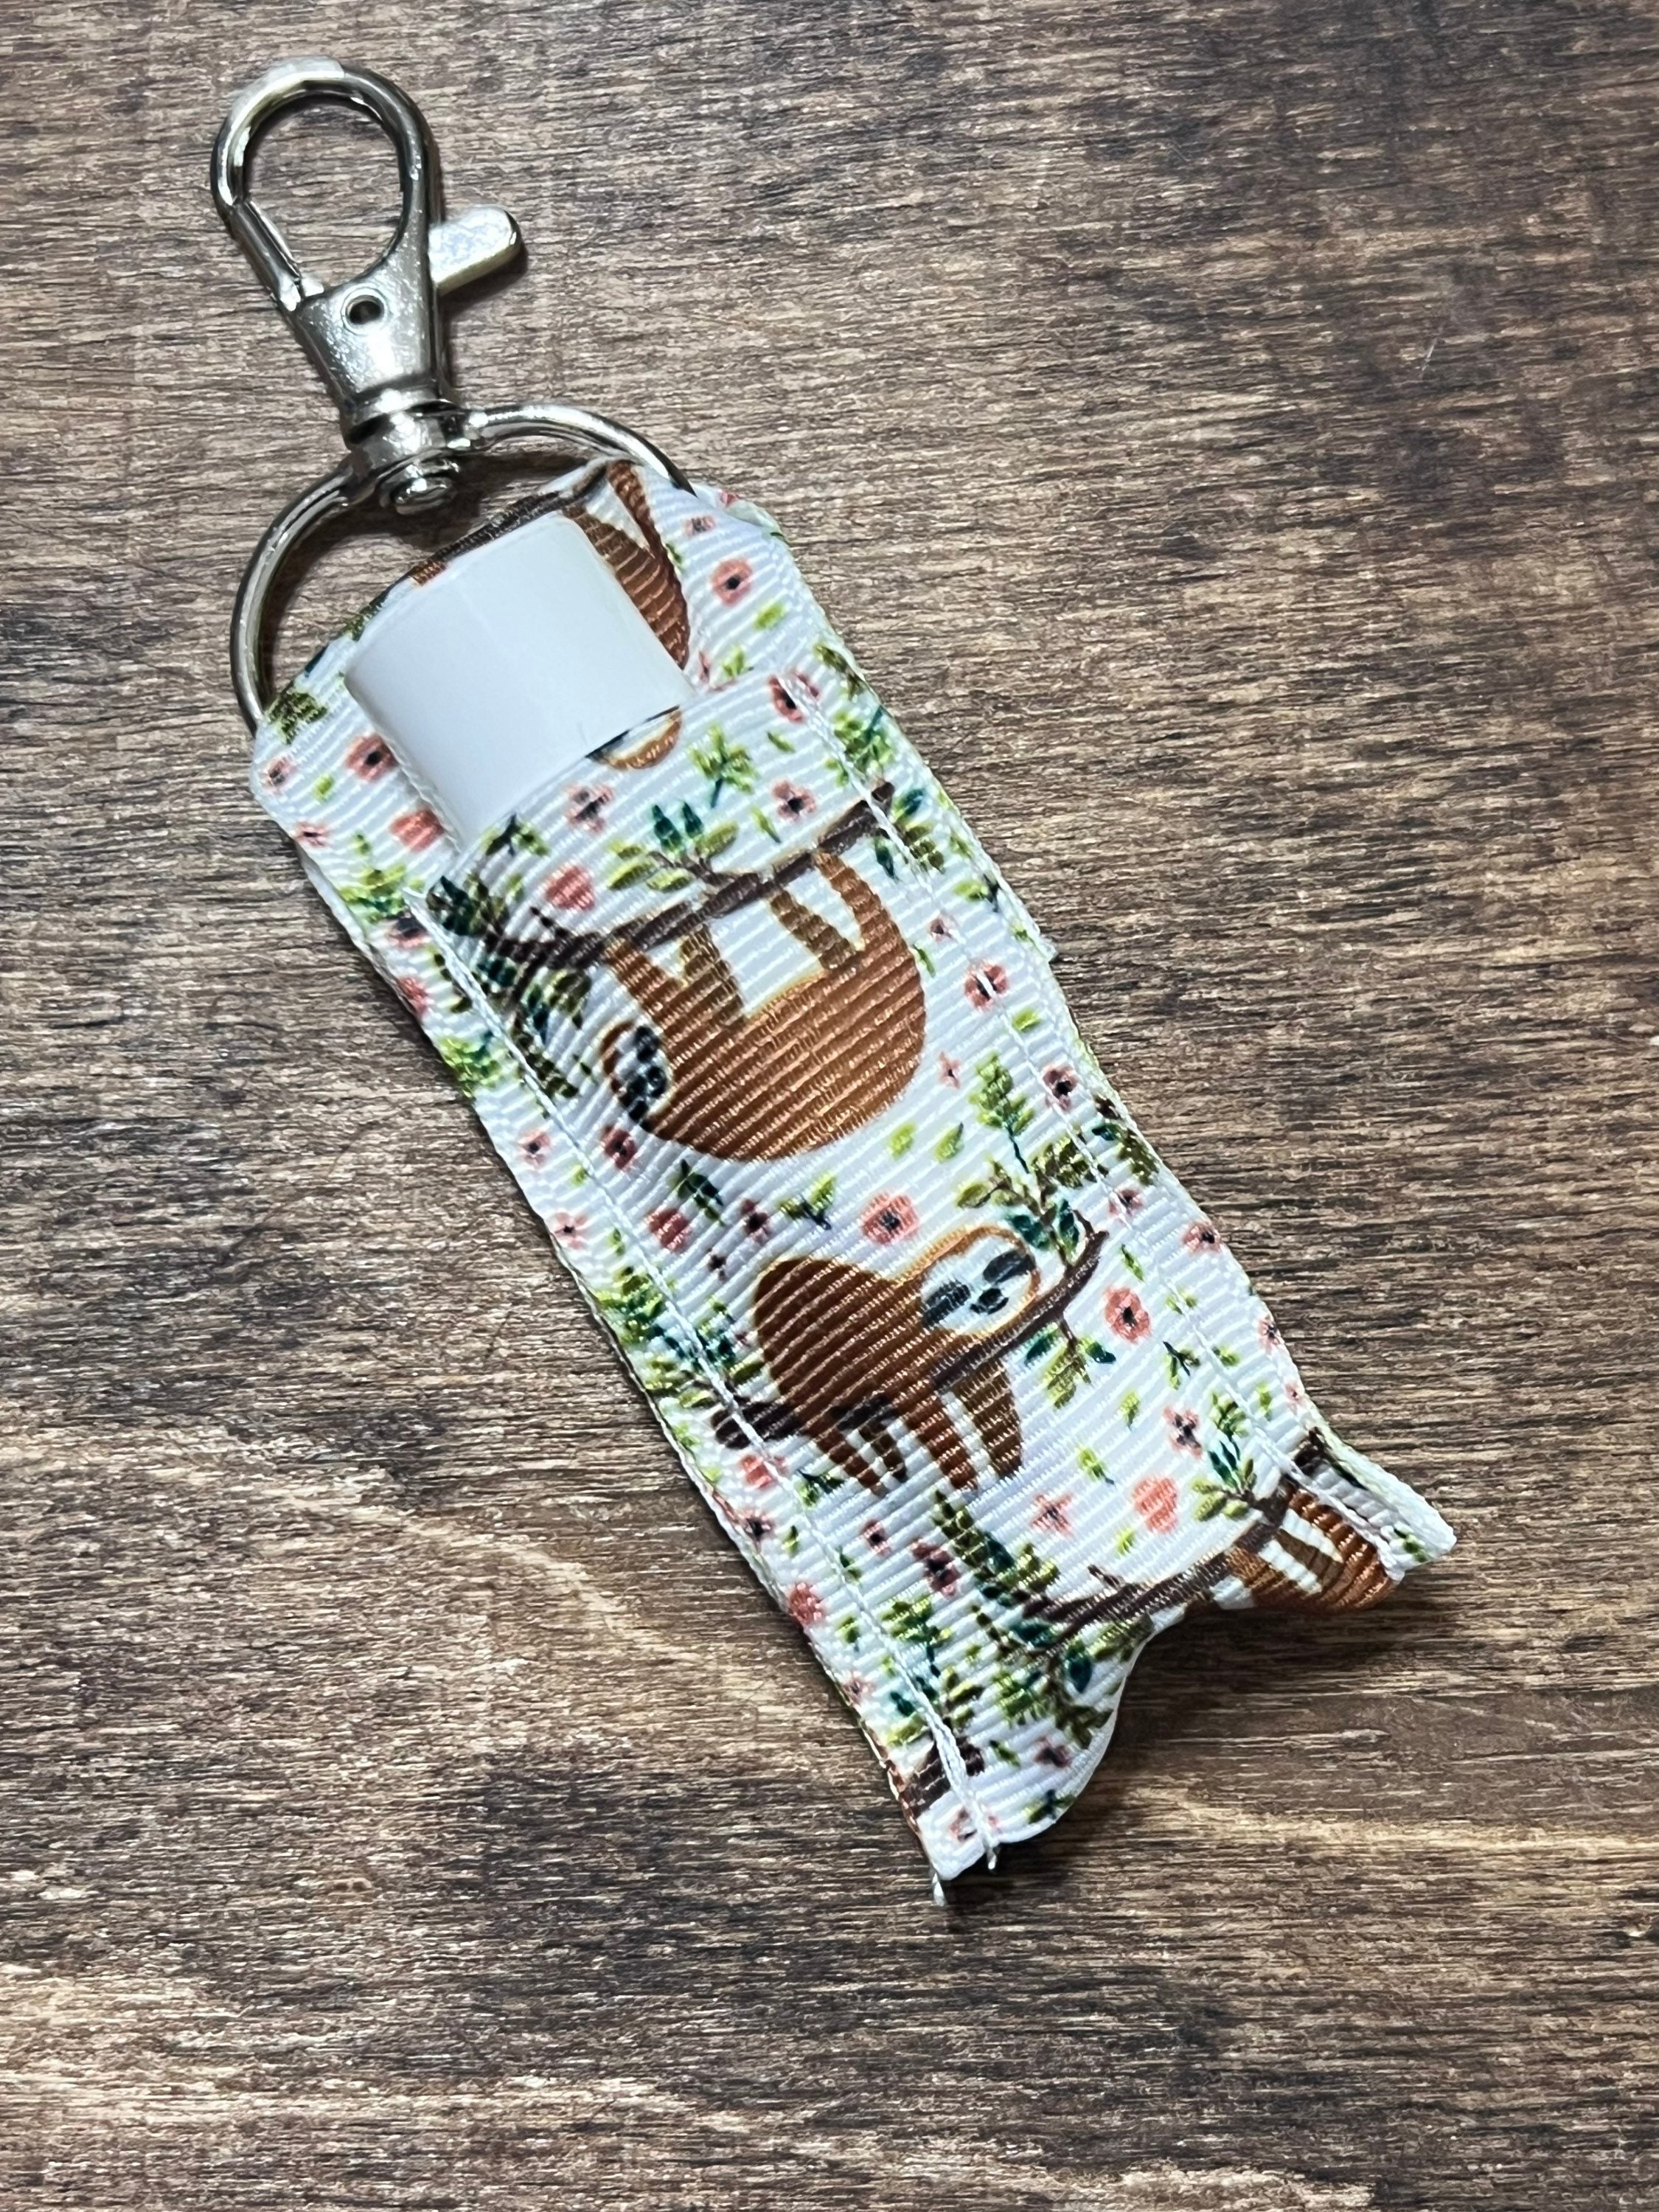 Floral Sloths Key Fob Wristlet Fabric Key Holder Keychain 